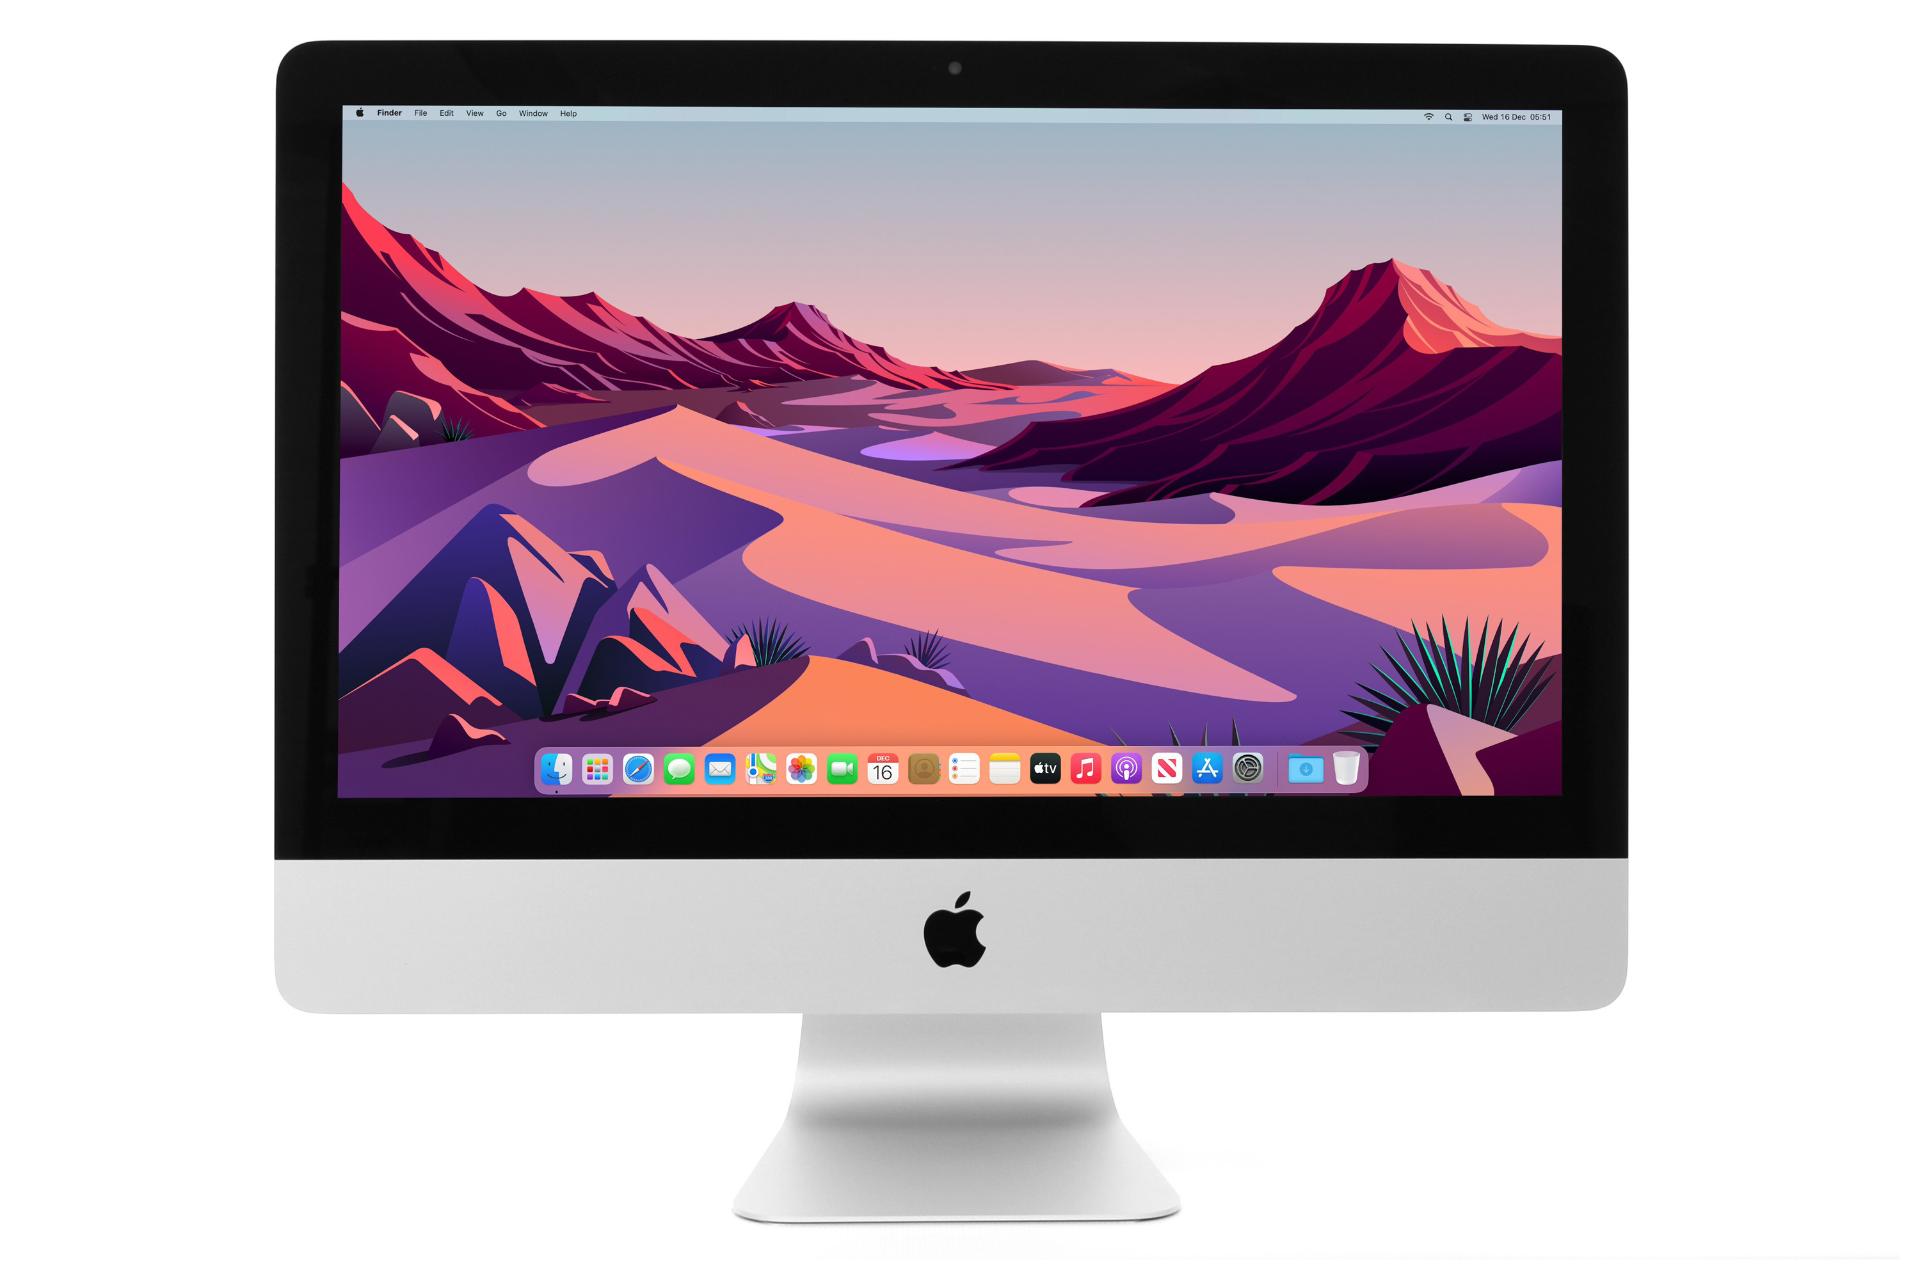 نمای روبرو کامپیوتر آل این وان All in One Apple iMac 21.5 inch 2017